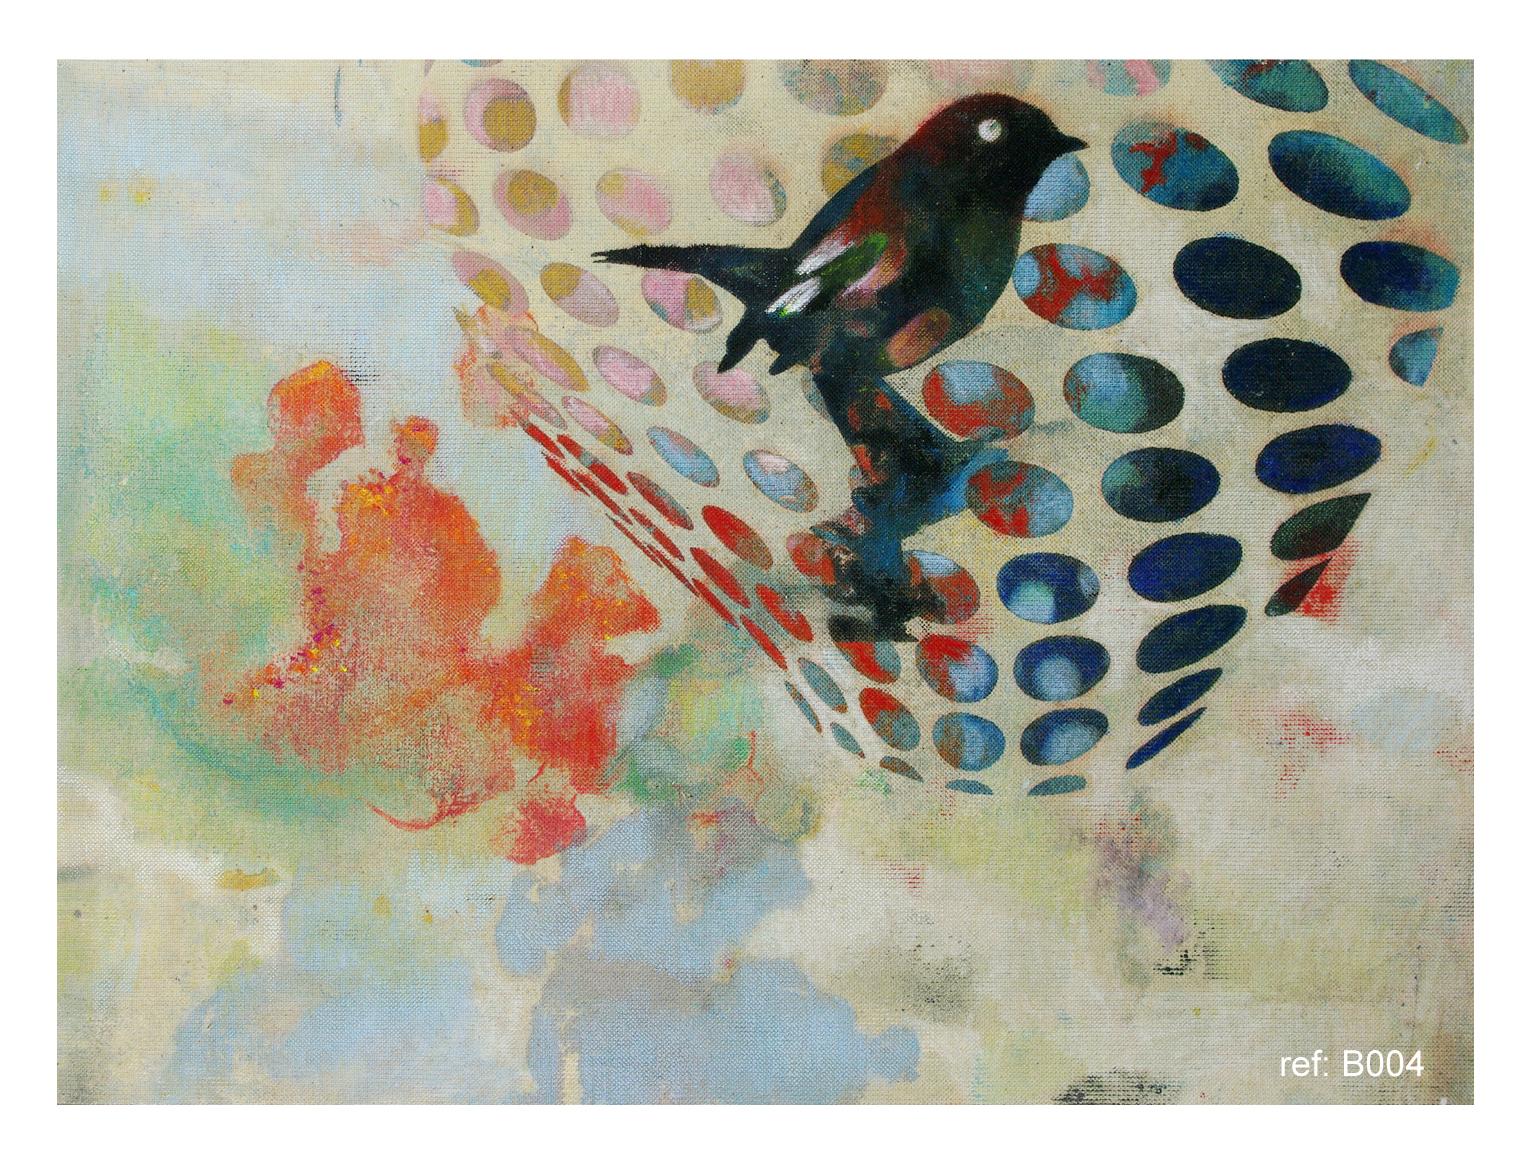 Vögel 019 – Zeitgenössisch, abstrakt, expressionistisch, modern, Straßenkunst, Surrealistisch – Mixed Media Art von Francisco Nicolás